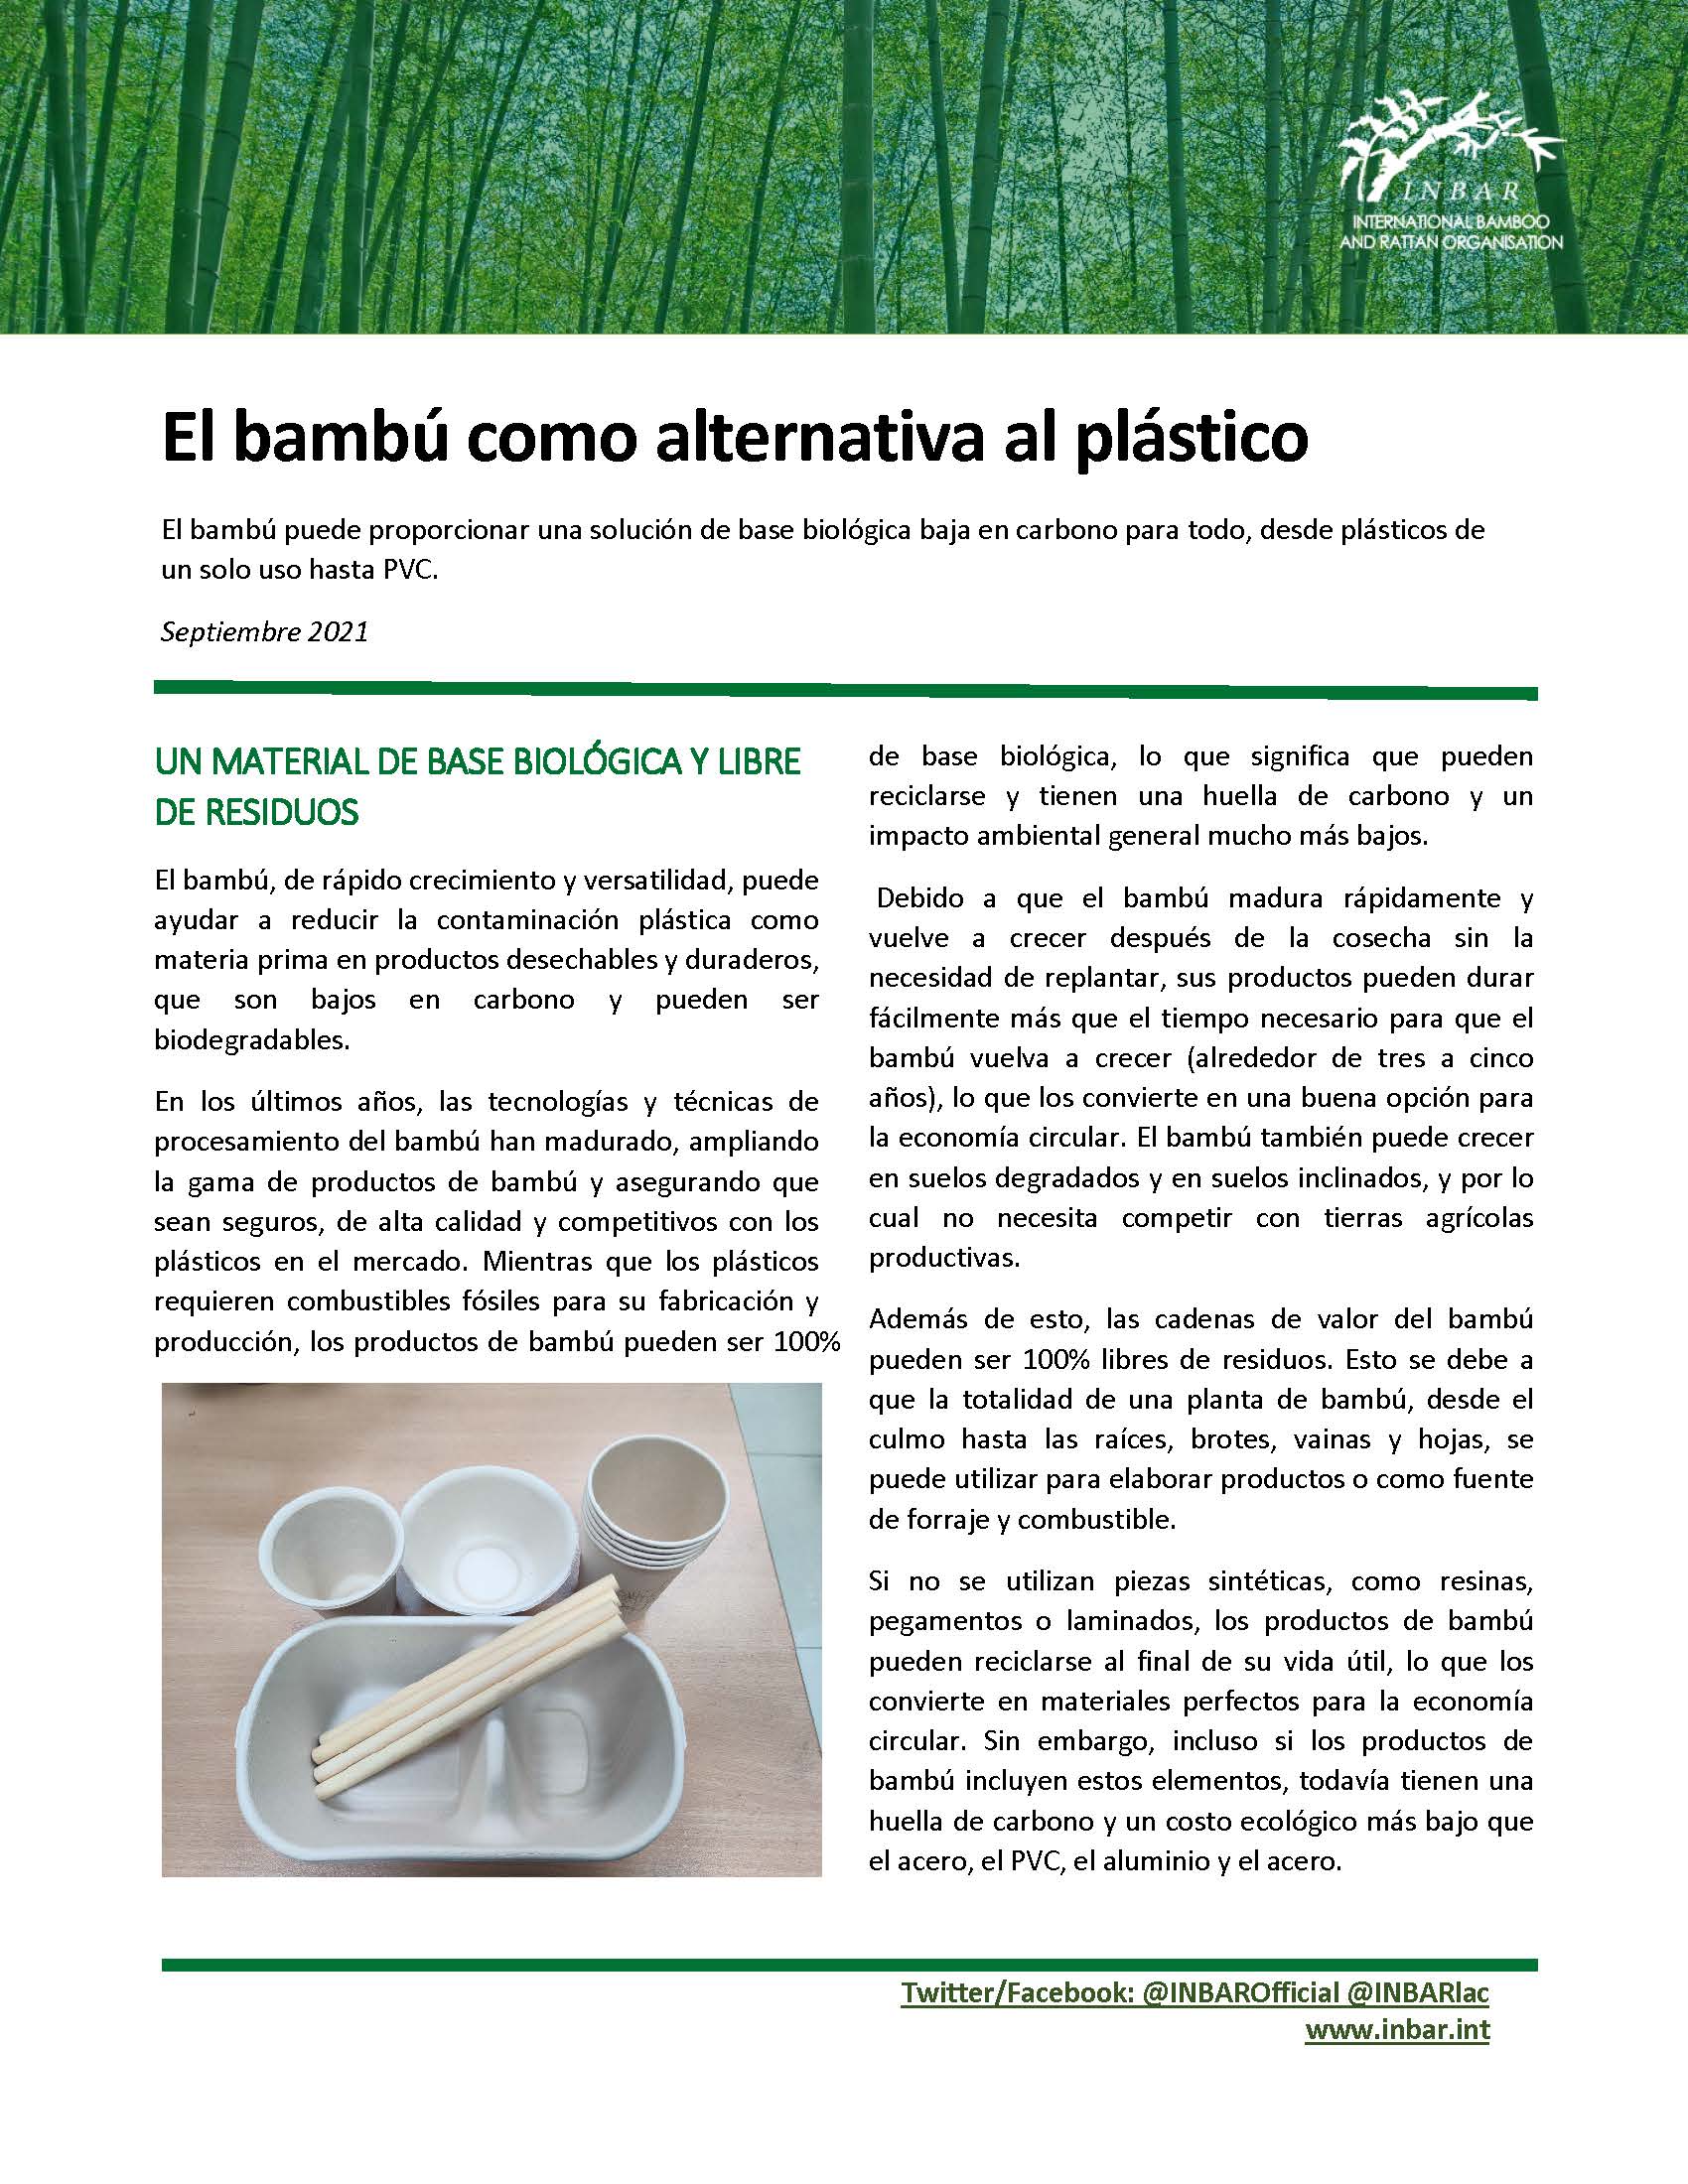 El bambú como alternativa al plástico: Hoja Informativa